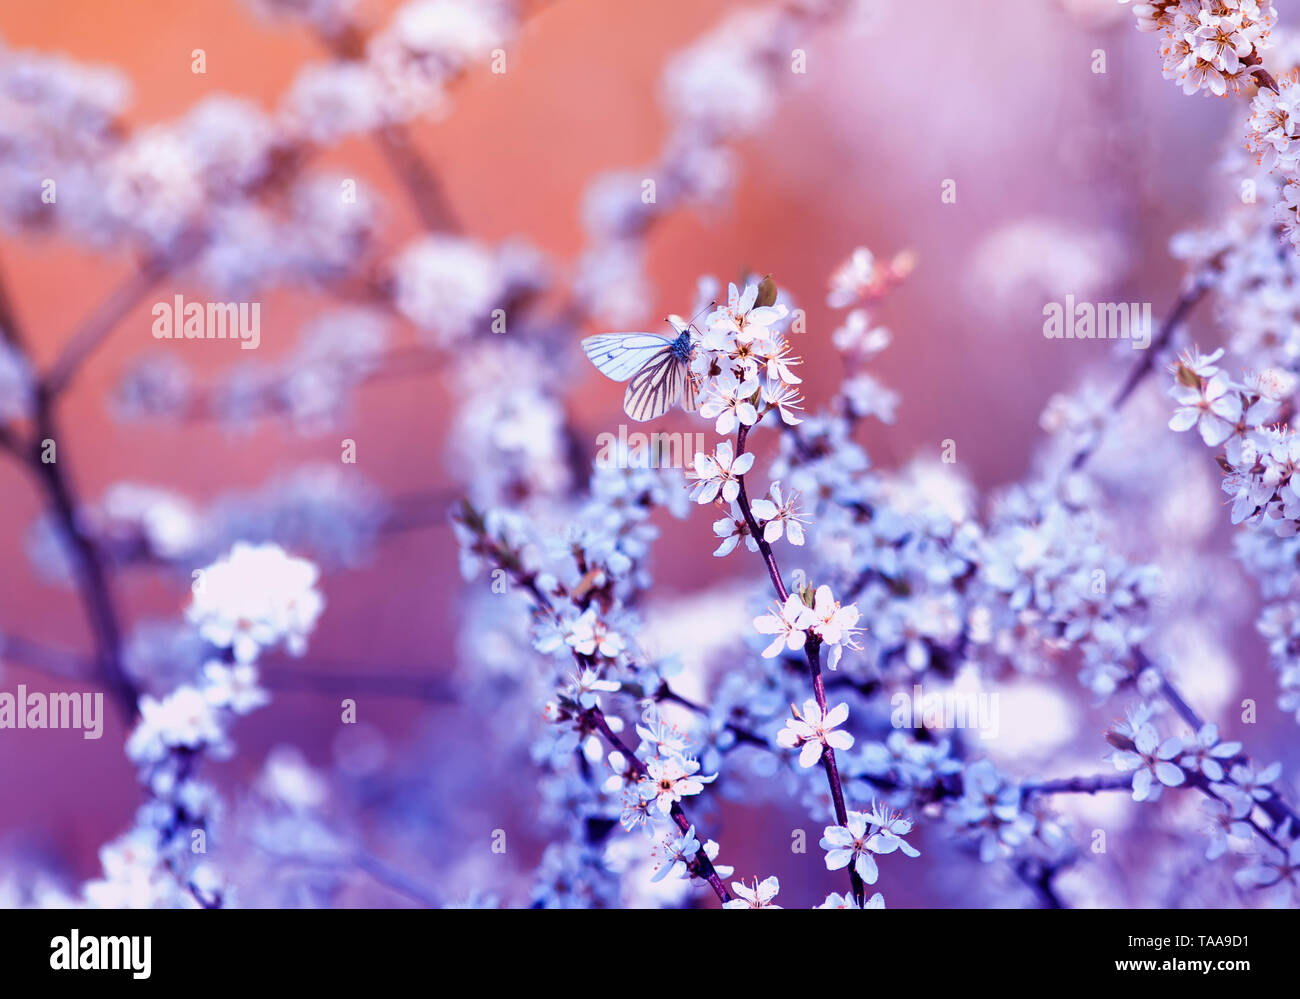 Kleinen weißen Schmetterling sitzt auf Branchen mit flauschigen duftenden Blumen und Sträuchern Knospen im Mai warmen sonnigen Garten blühen in lila Blumen Ah Stockfoto